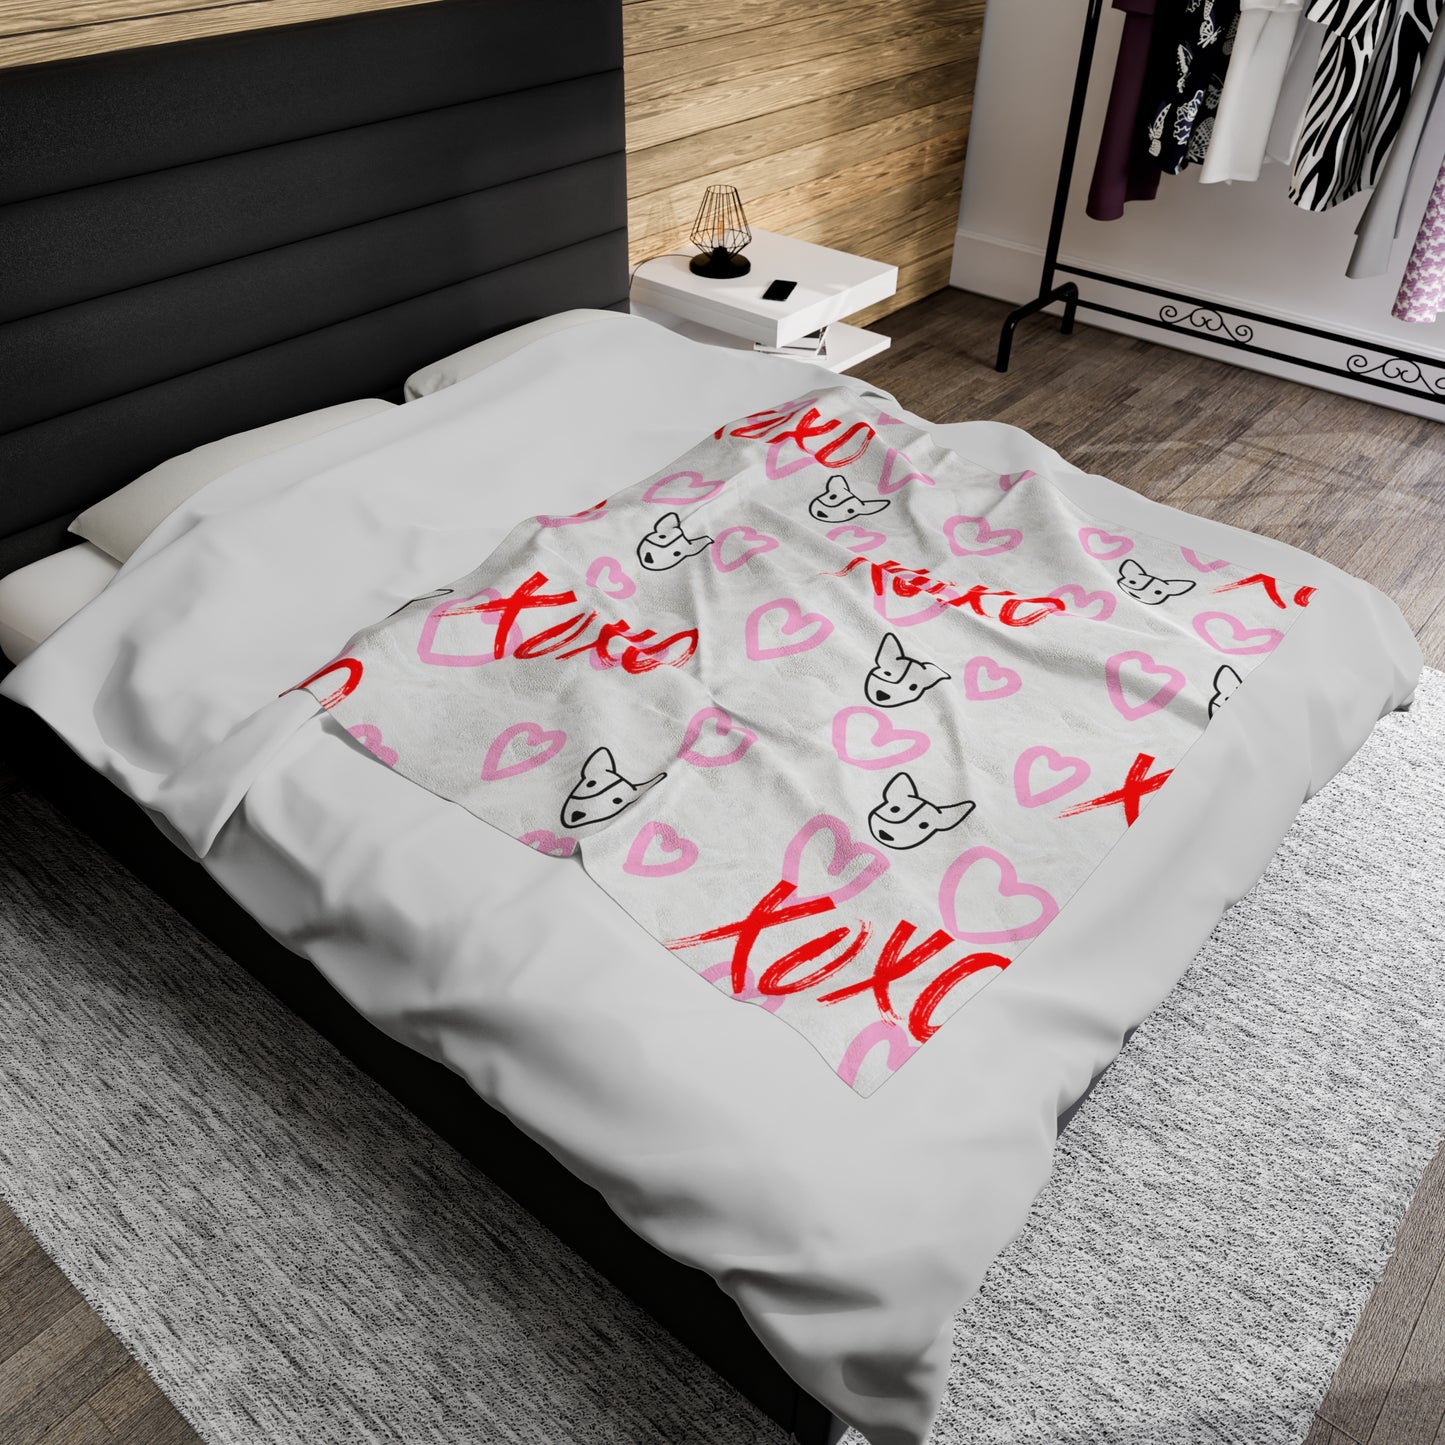 Bull Terrier XOXO Velveteen Plush Blanket